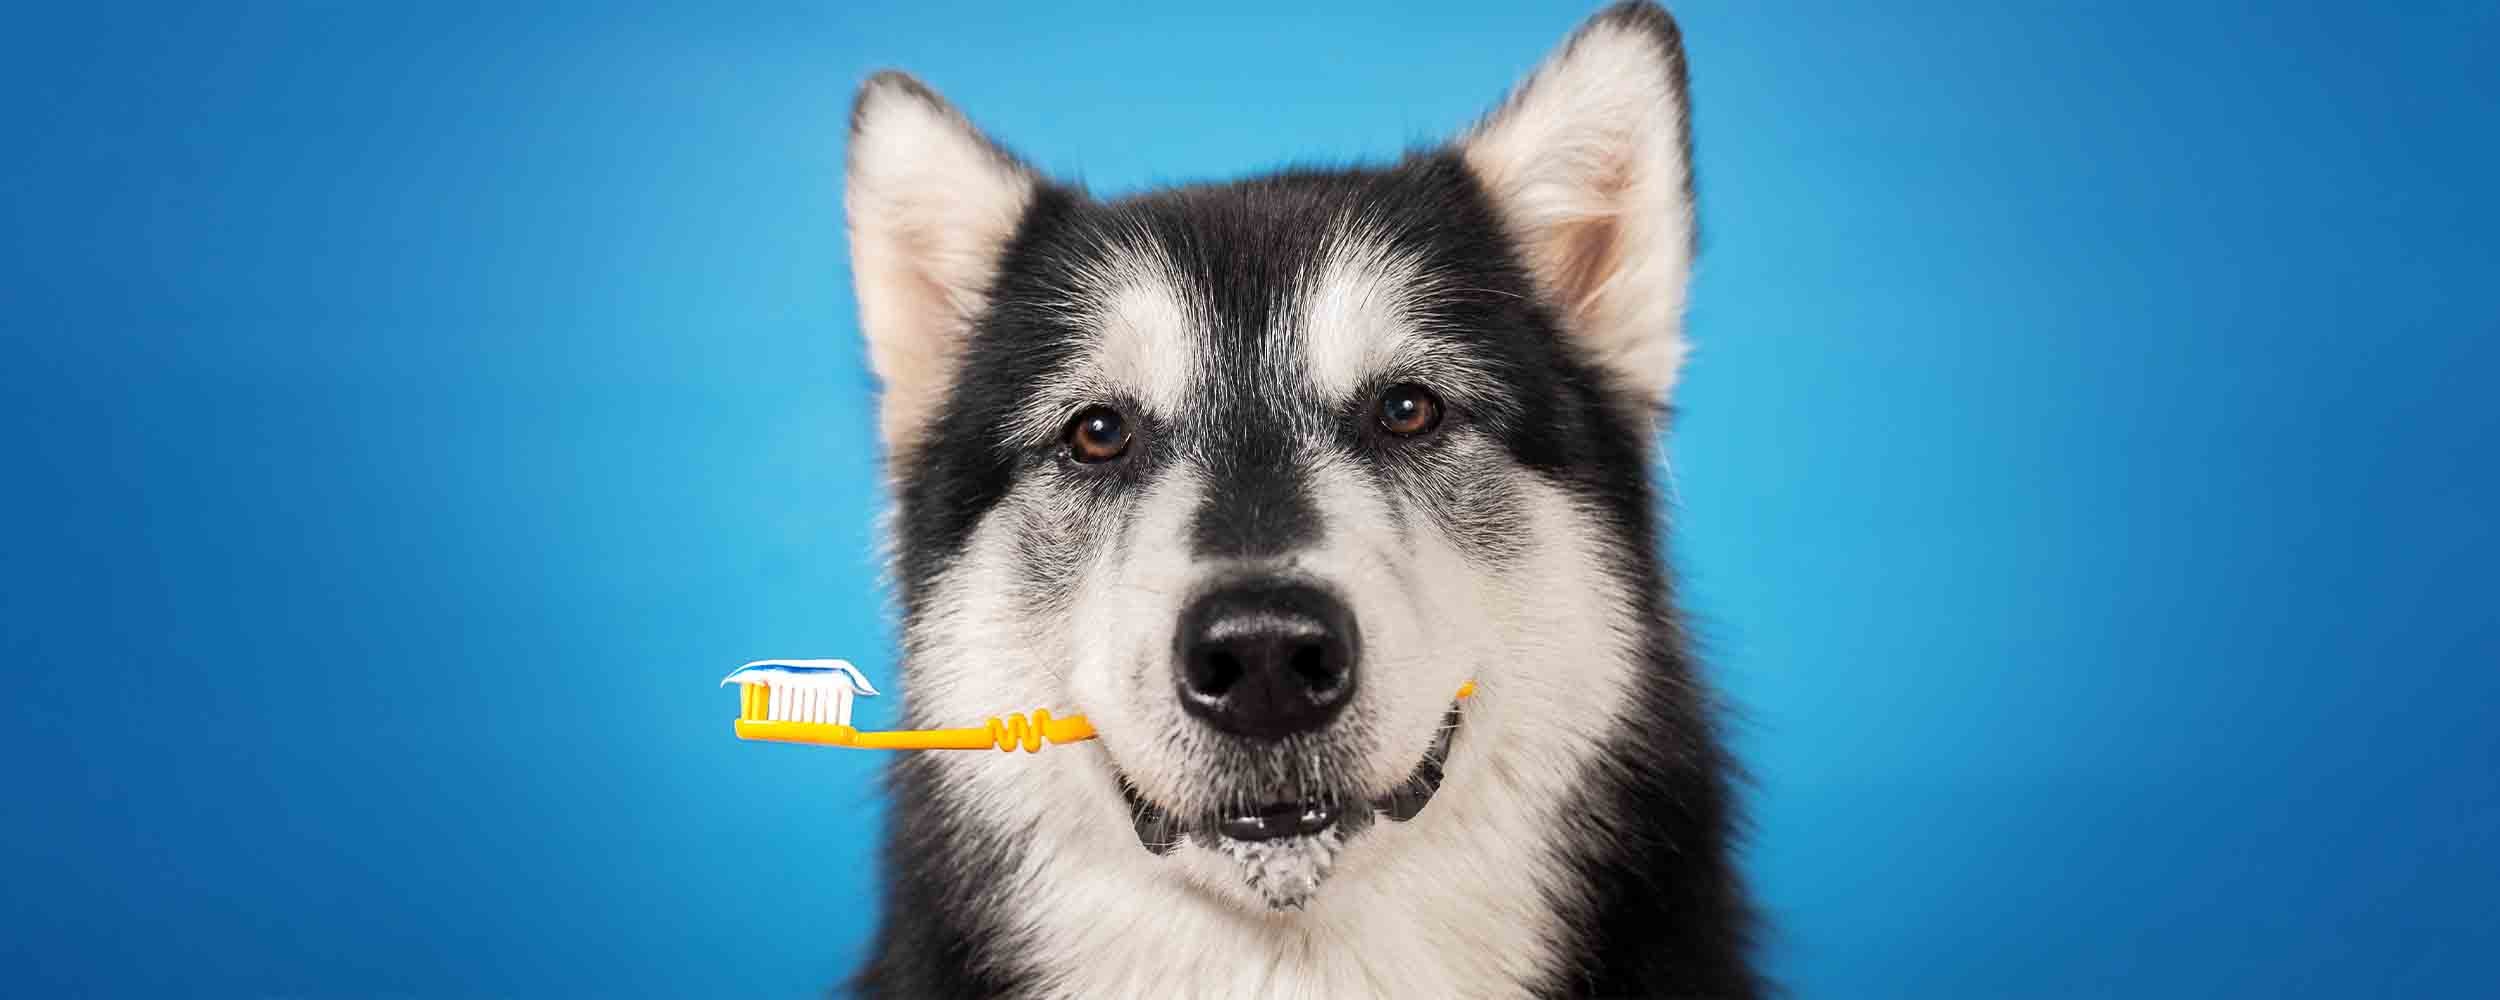 Higiena jamy ustnej psów i kotów czyli jak zadbać o zdrowe zęby swojego pupila